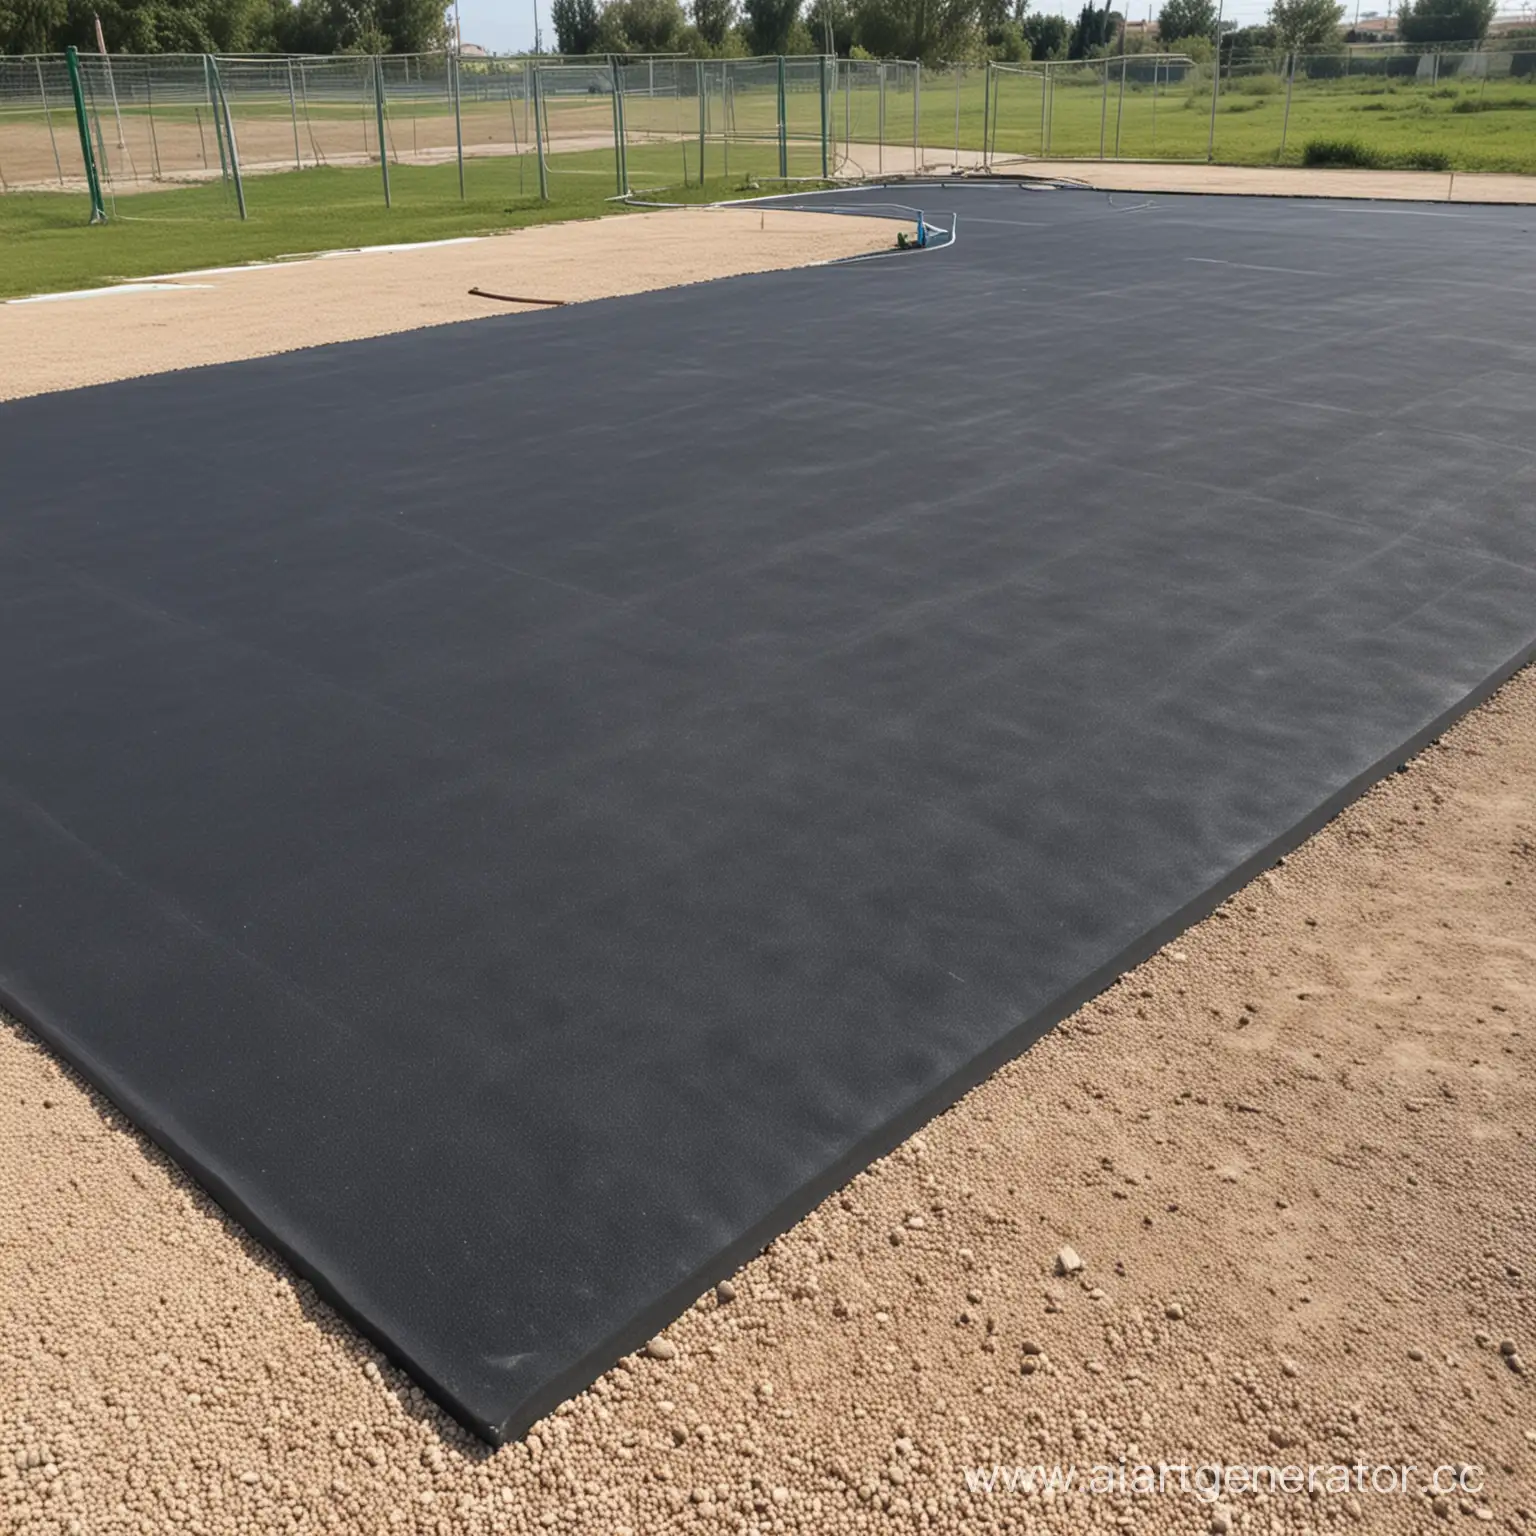 спортивная площадка с резиновым покрытием 20 на 23 метра